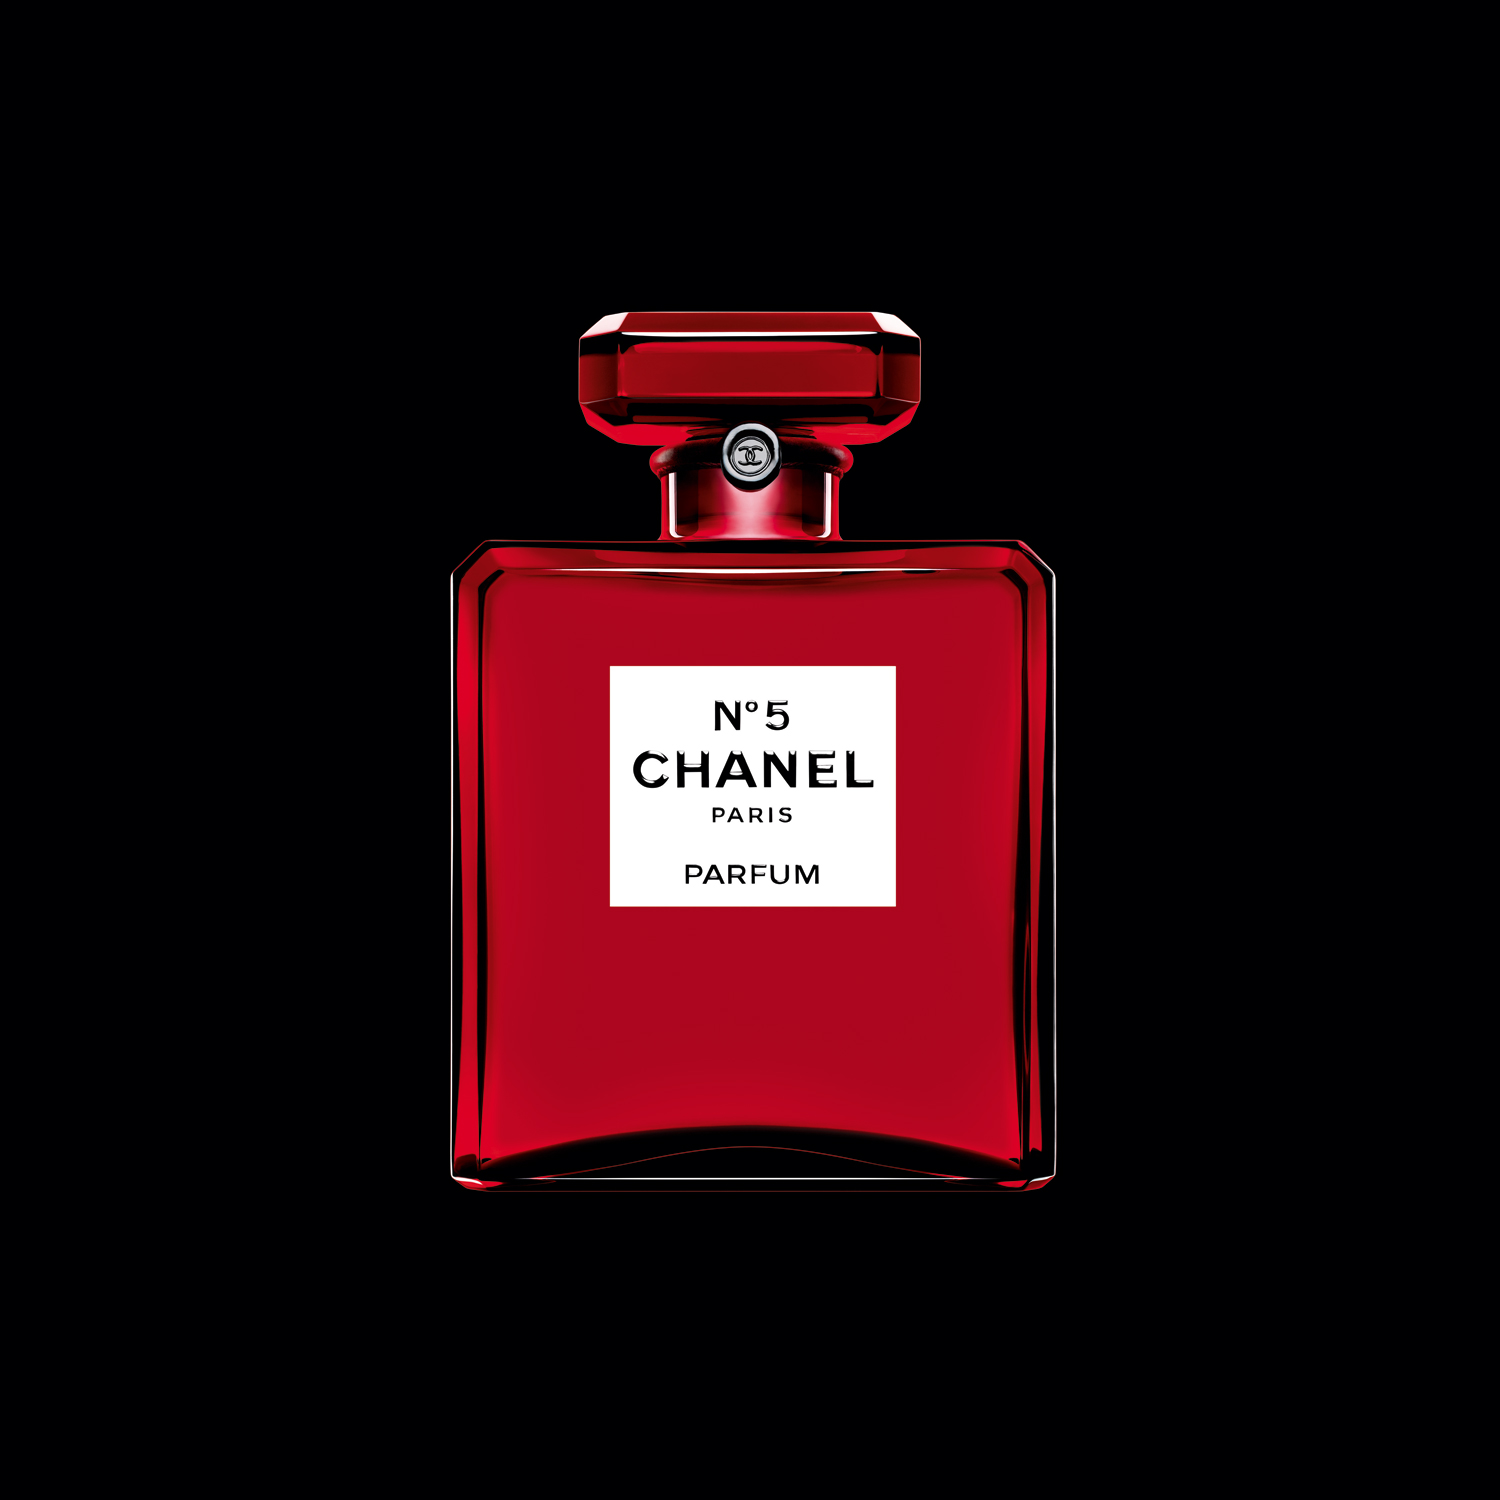 Chanel No 5 Parfum Red Edition Chanel perfume - una nuevo fragancia